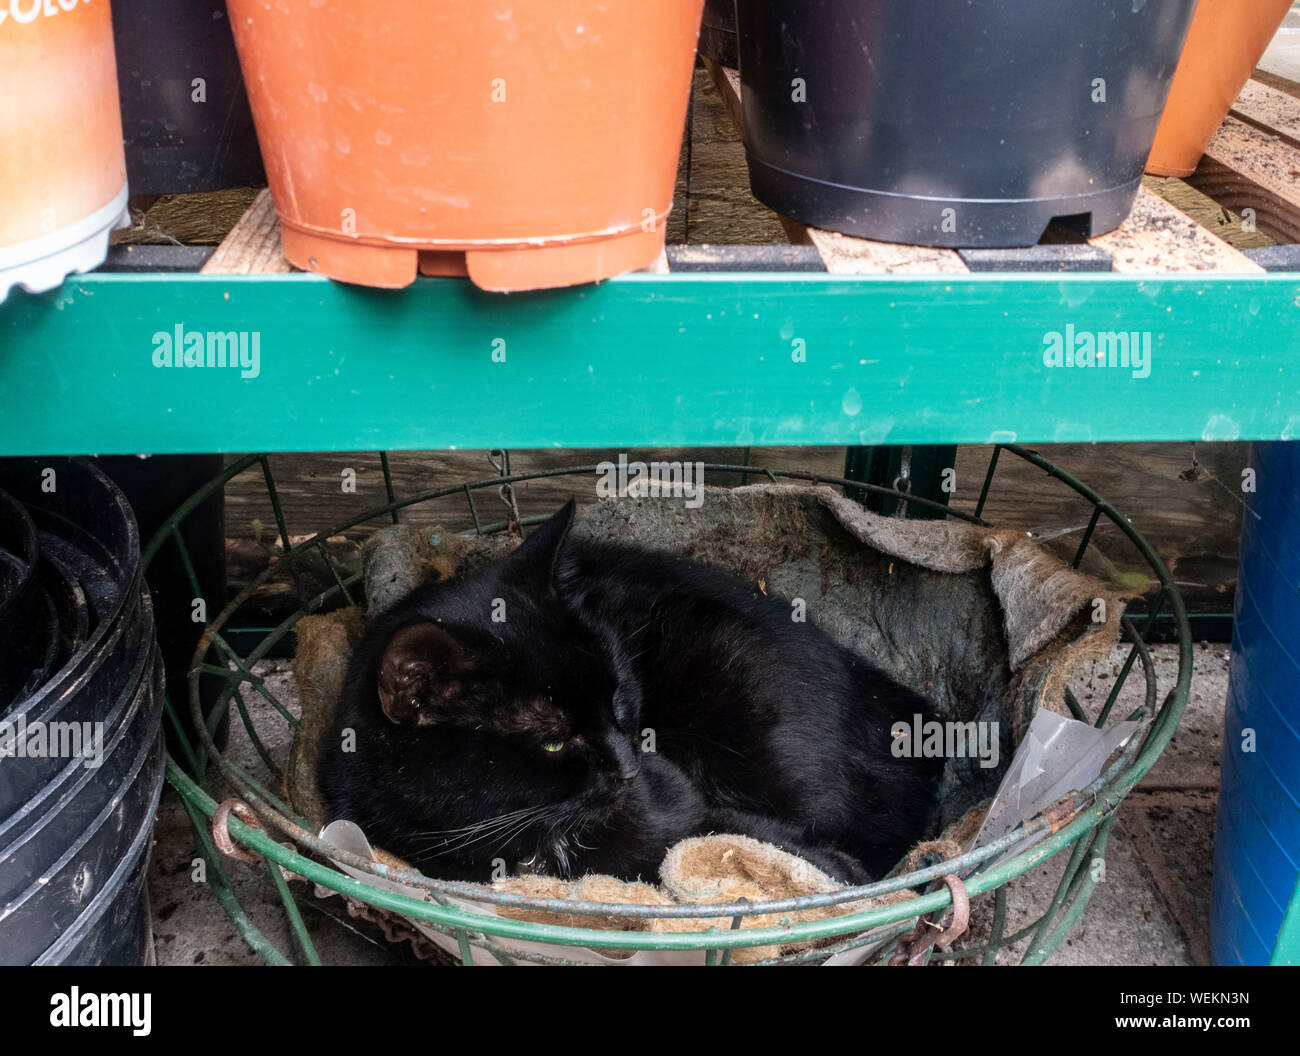 Jeune chat noir endormi dans un panier suspendu dans une serre. Banque D'Images